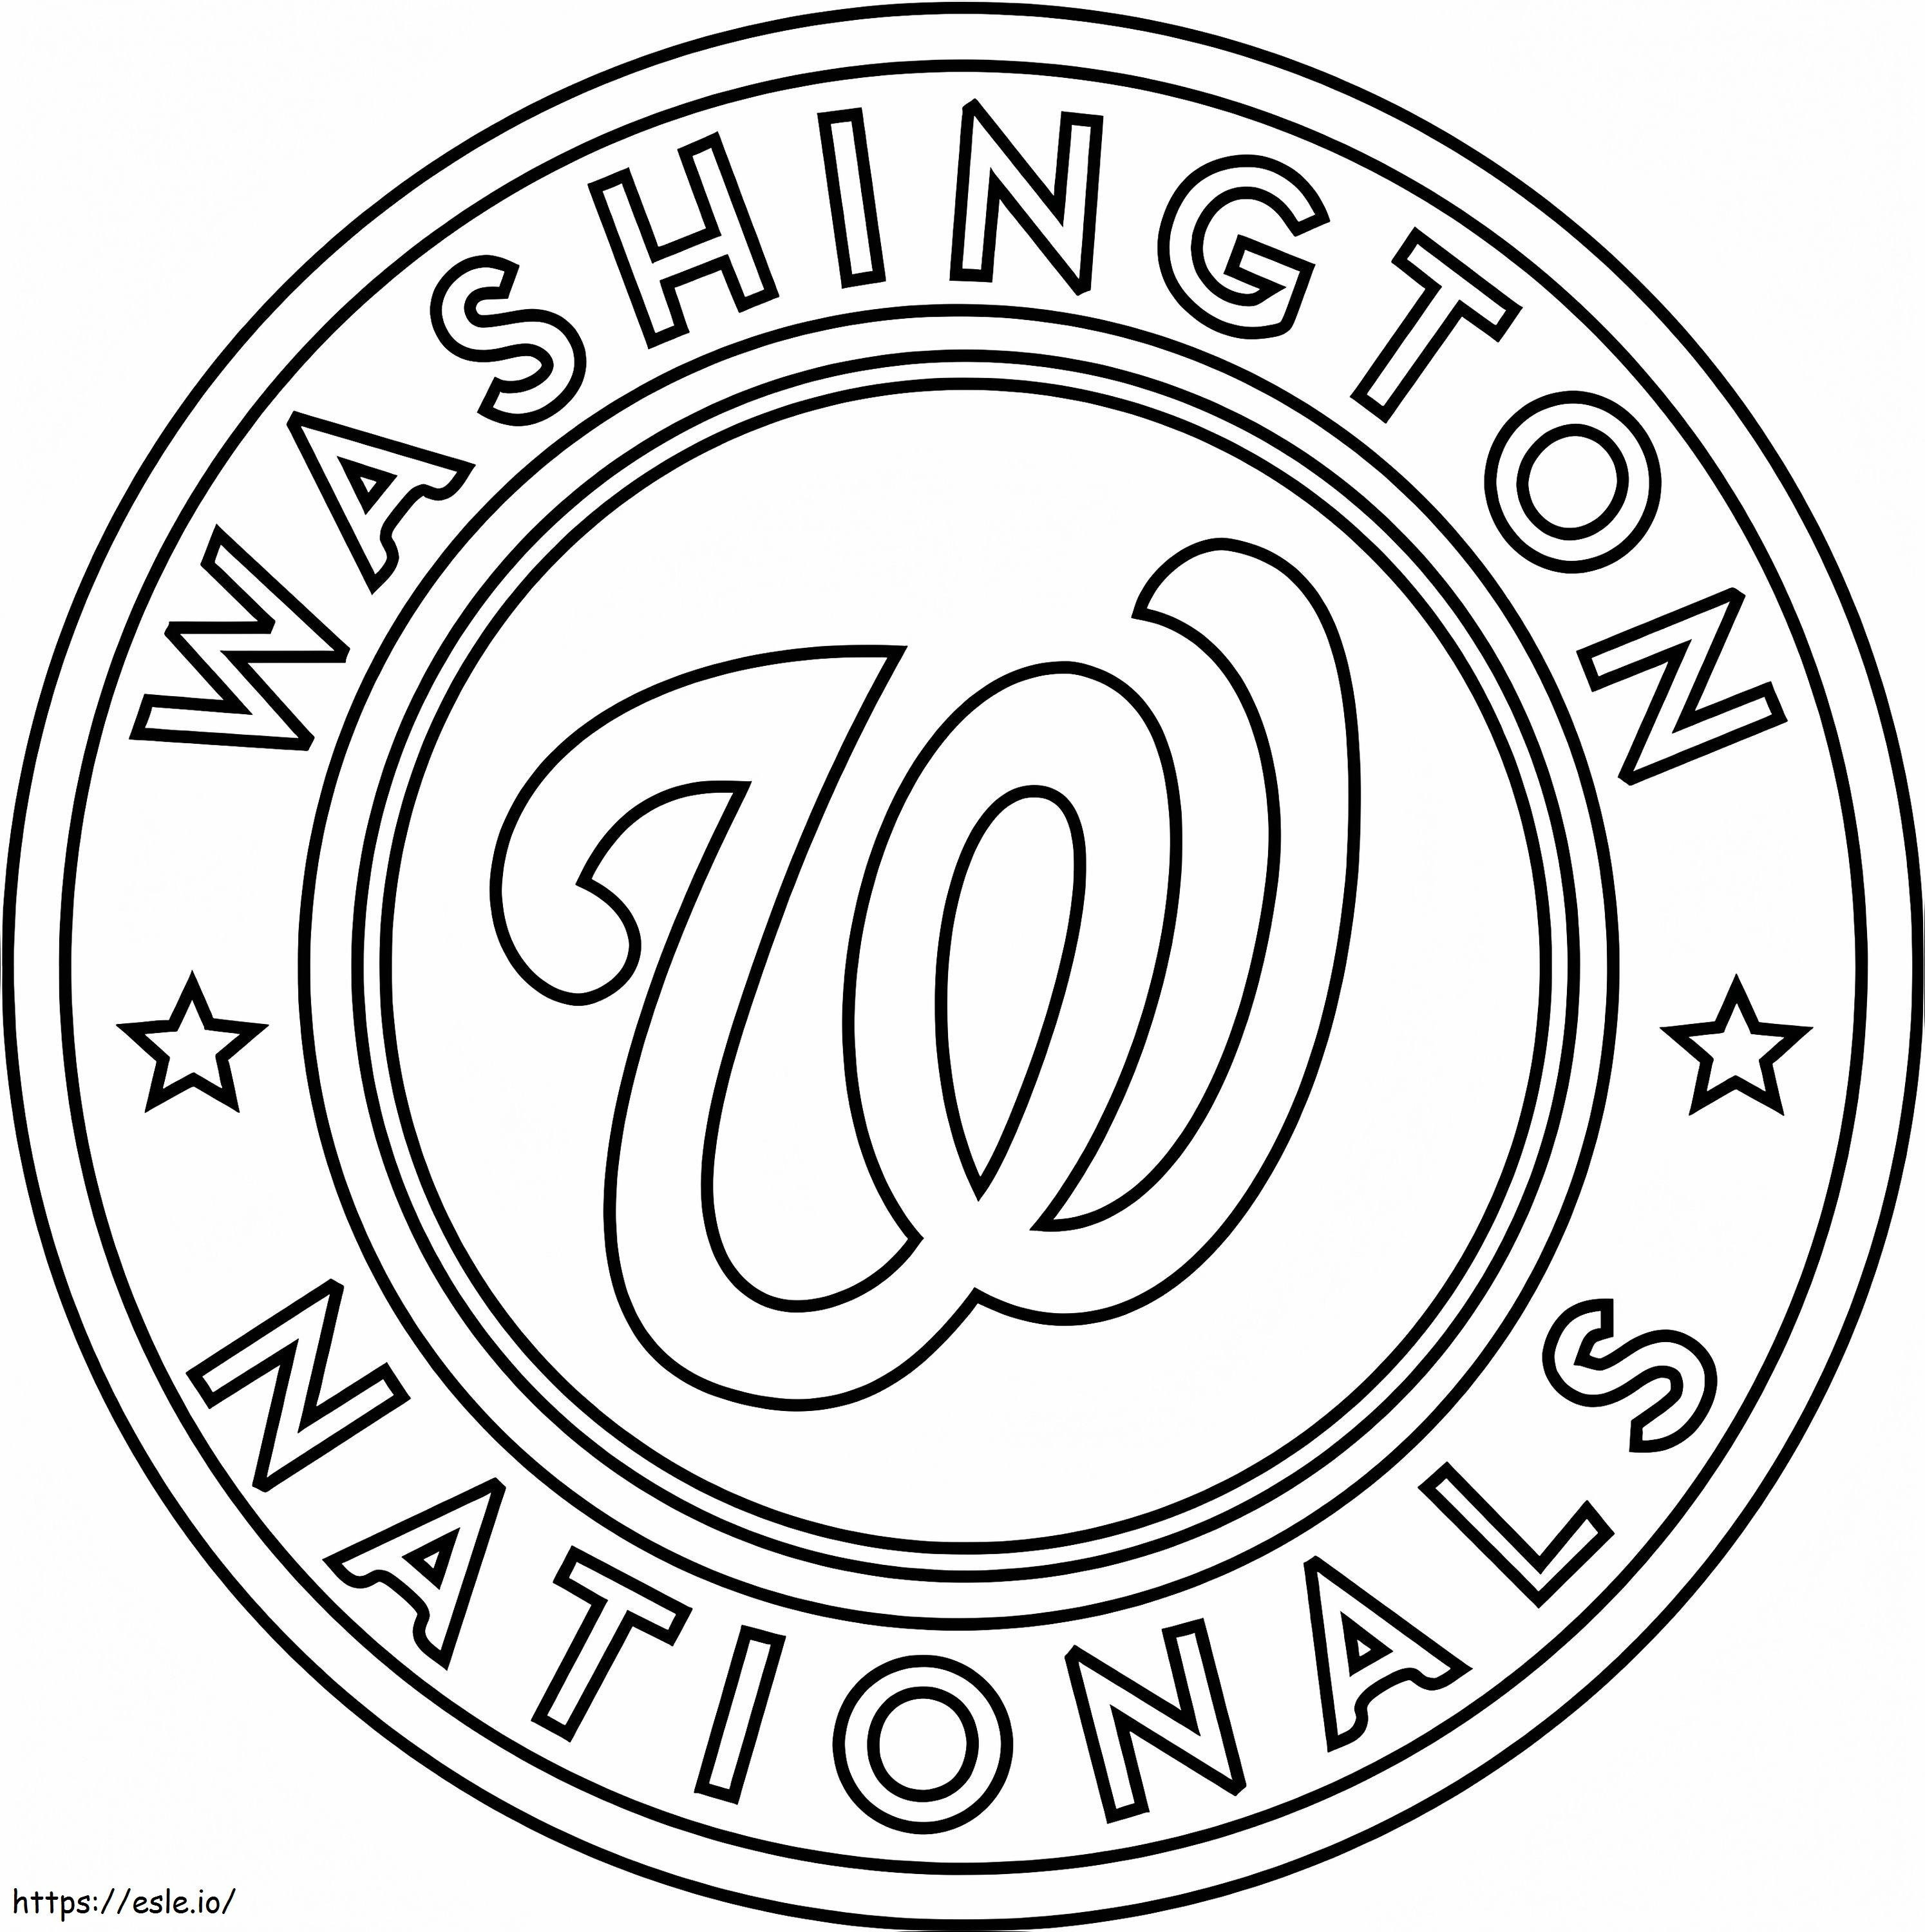 Washington Ulusal Logosu boyama